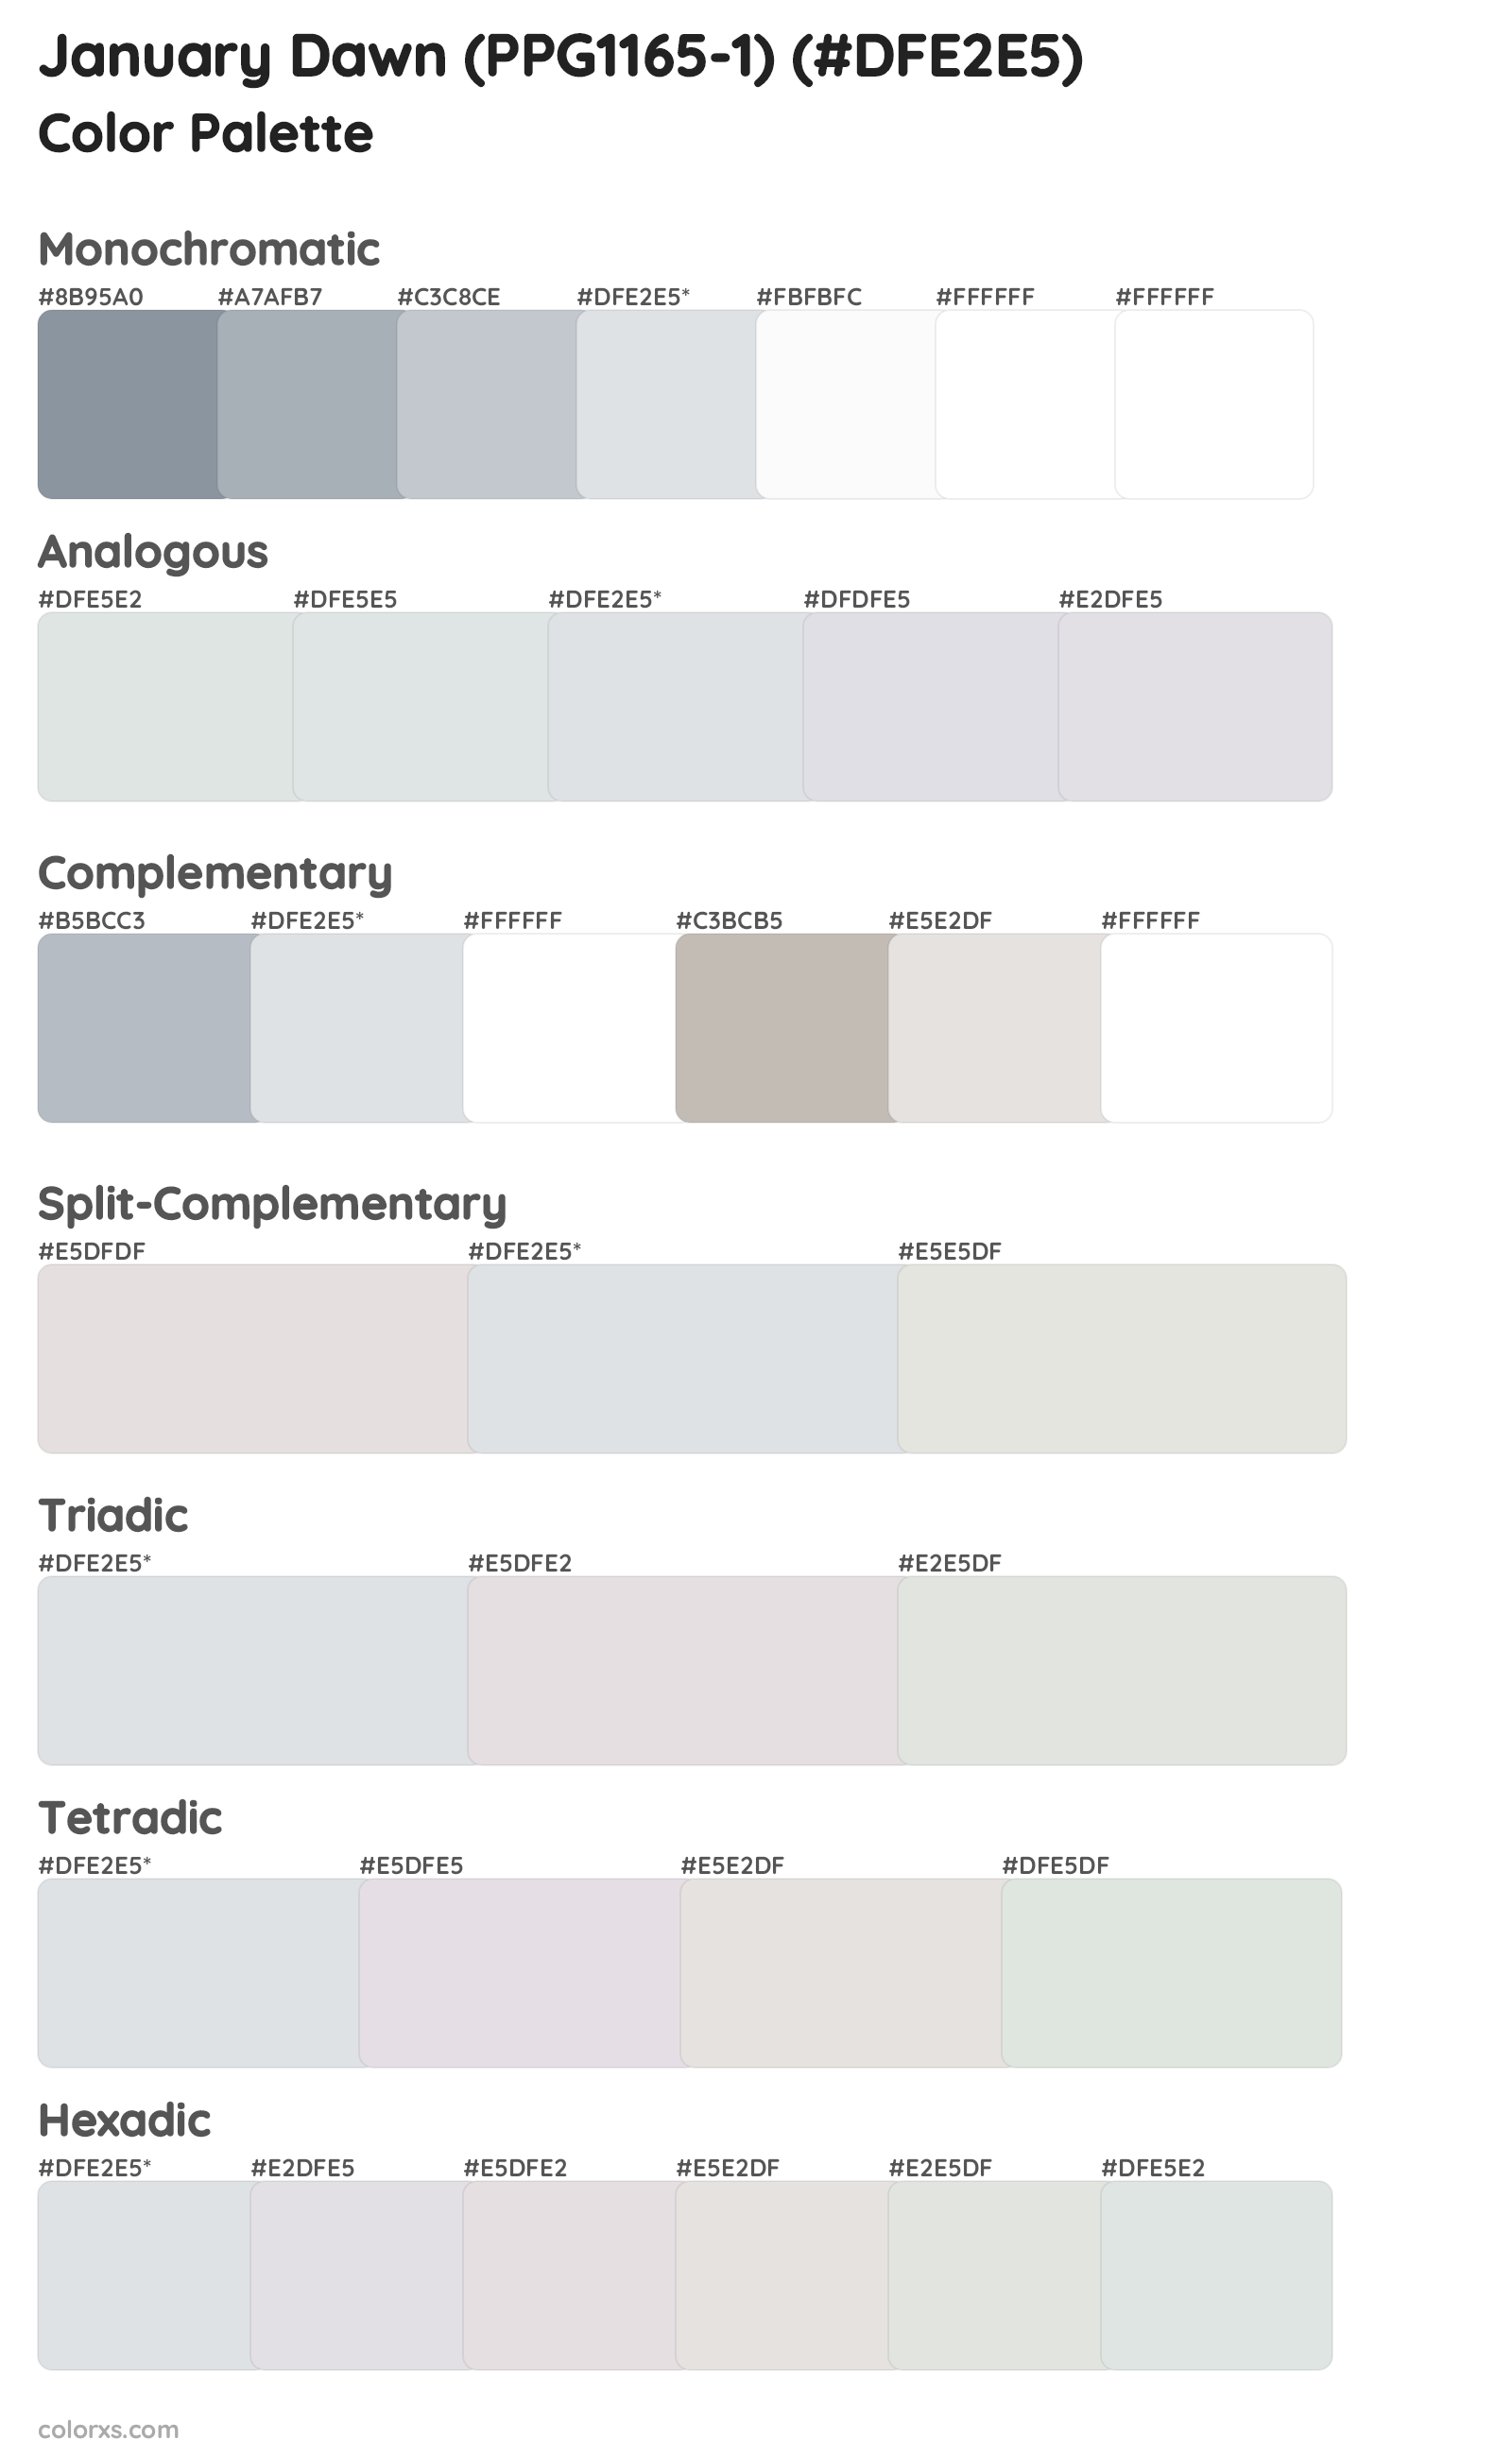 January Dawn (PPG1165-1) Color Scheme Palettes